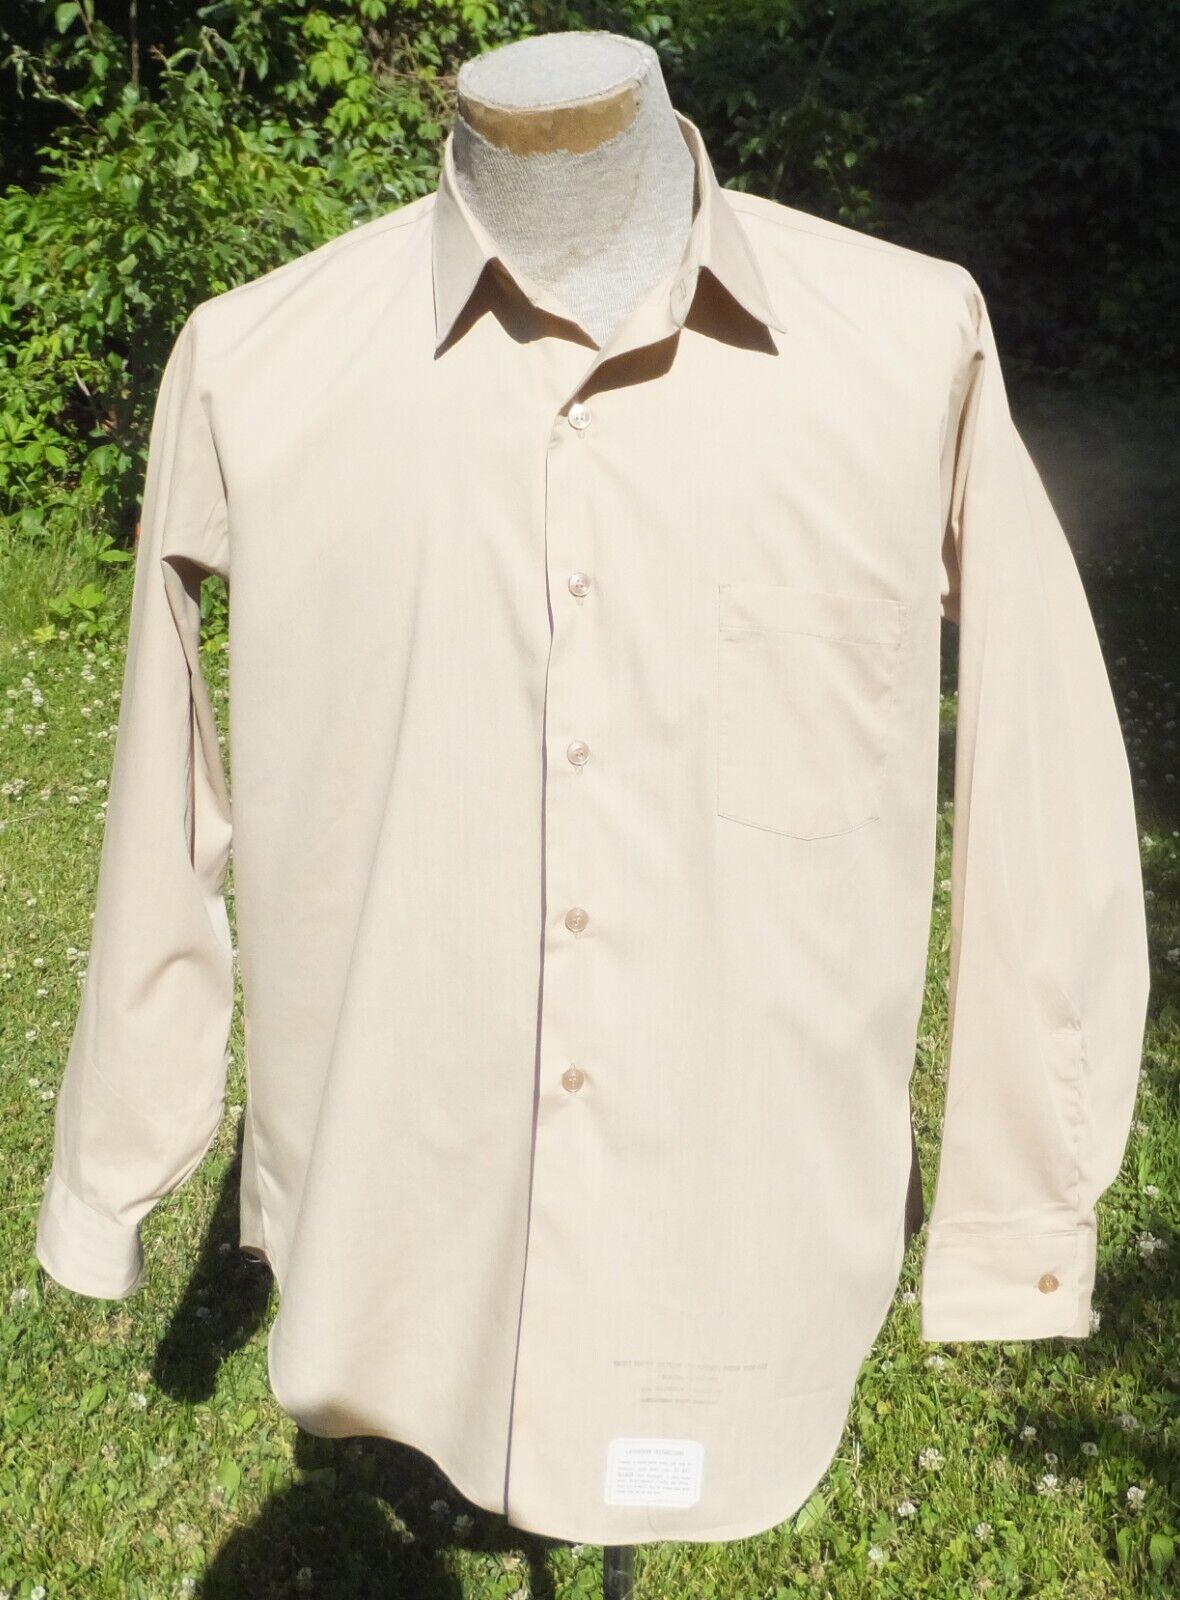 1974 Vietnam Era U.S. Army Men\'s Uniform Shirt DSA100-74-C1658 Sz 16 1/2x34